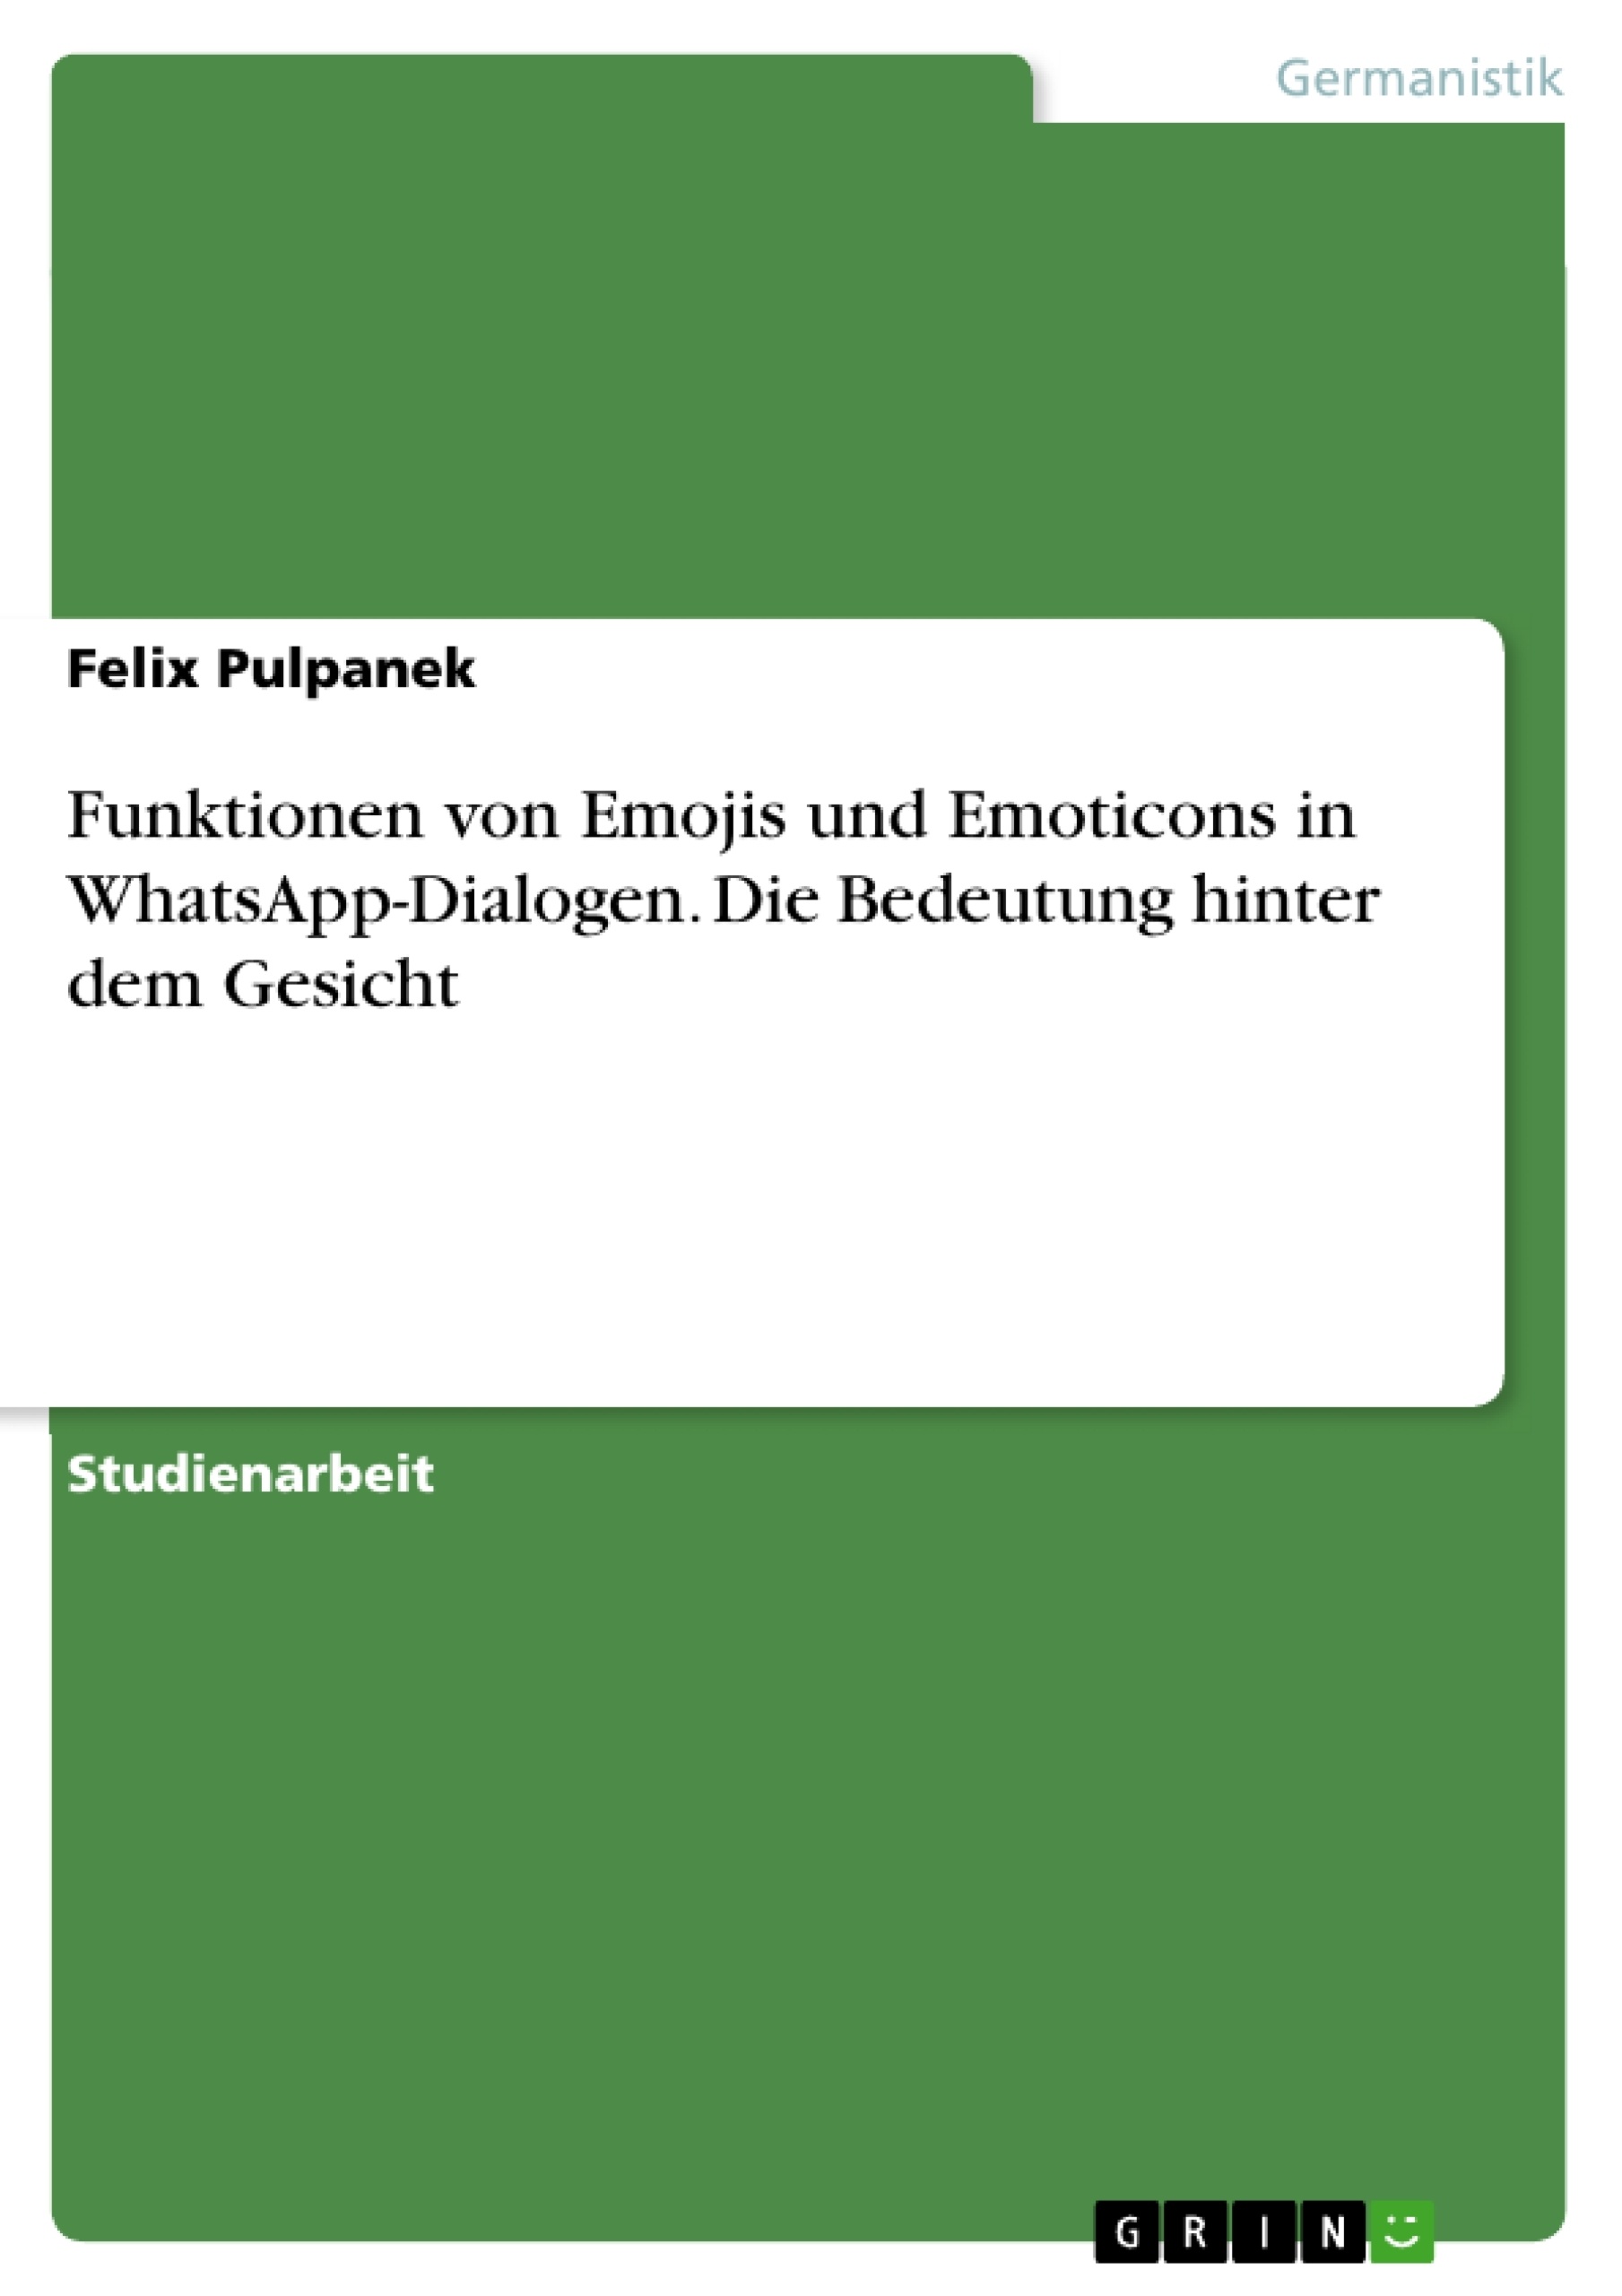 Whatsapp bedeutung deutsch